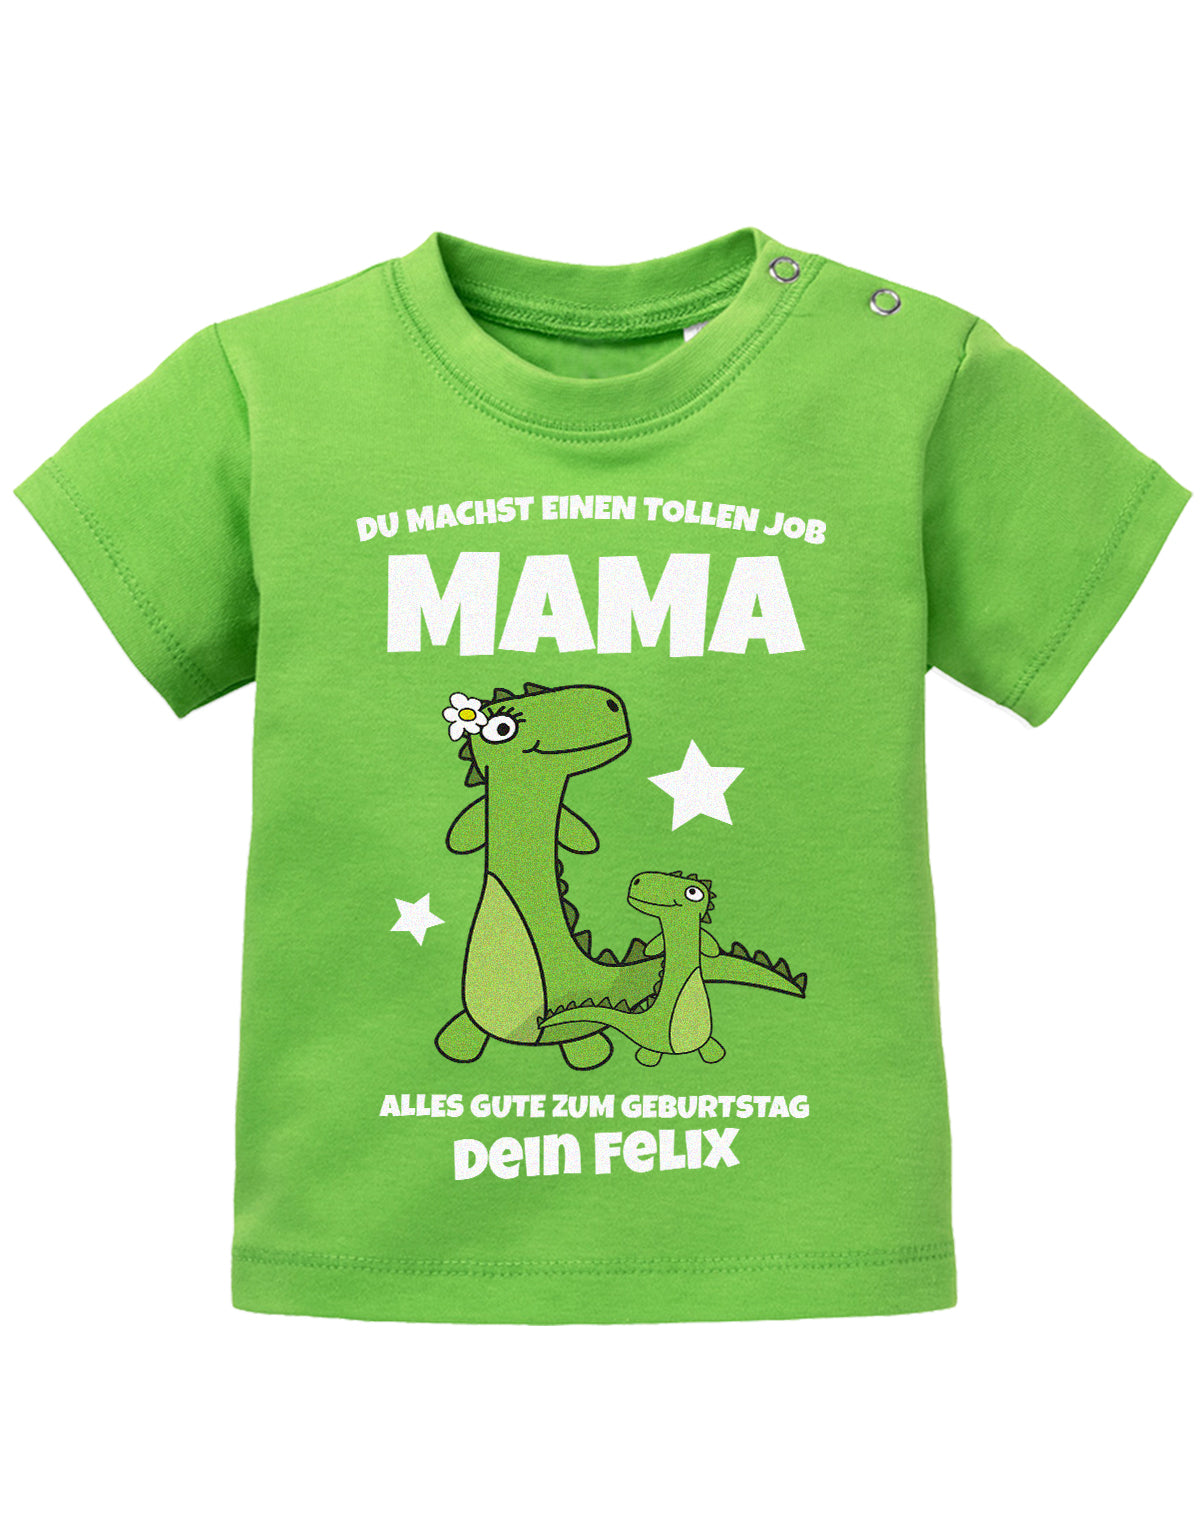 Mama Spruch Baby Shirt. Du machst einen tollen Job, Mama. Alles Gute zum Geburtstag. Personalisiert mit Namen. Grün